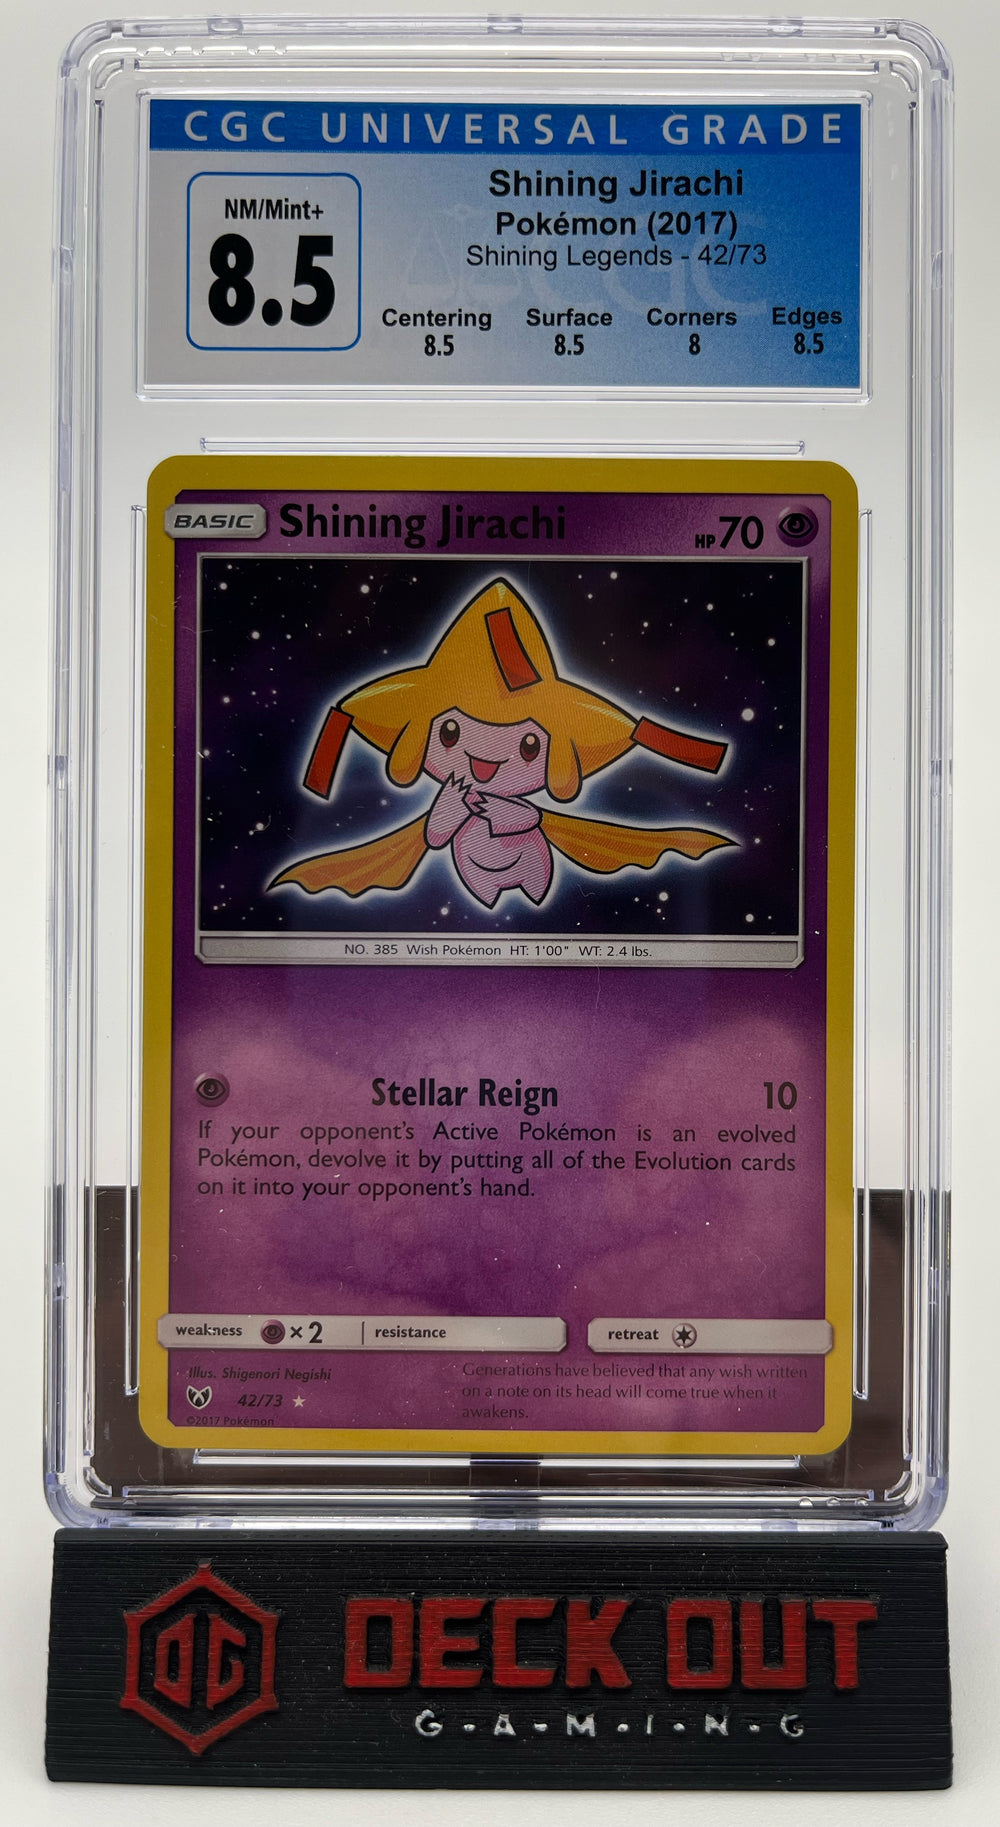 Shining Jirachi - Shining Legends - 42/73 - CGC 8.5 (8.5/8.5/8.0/8.5)